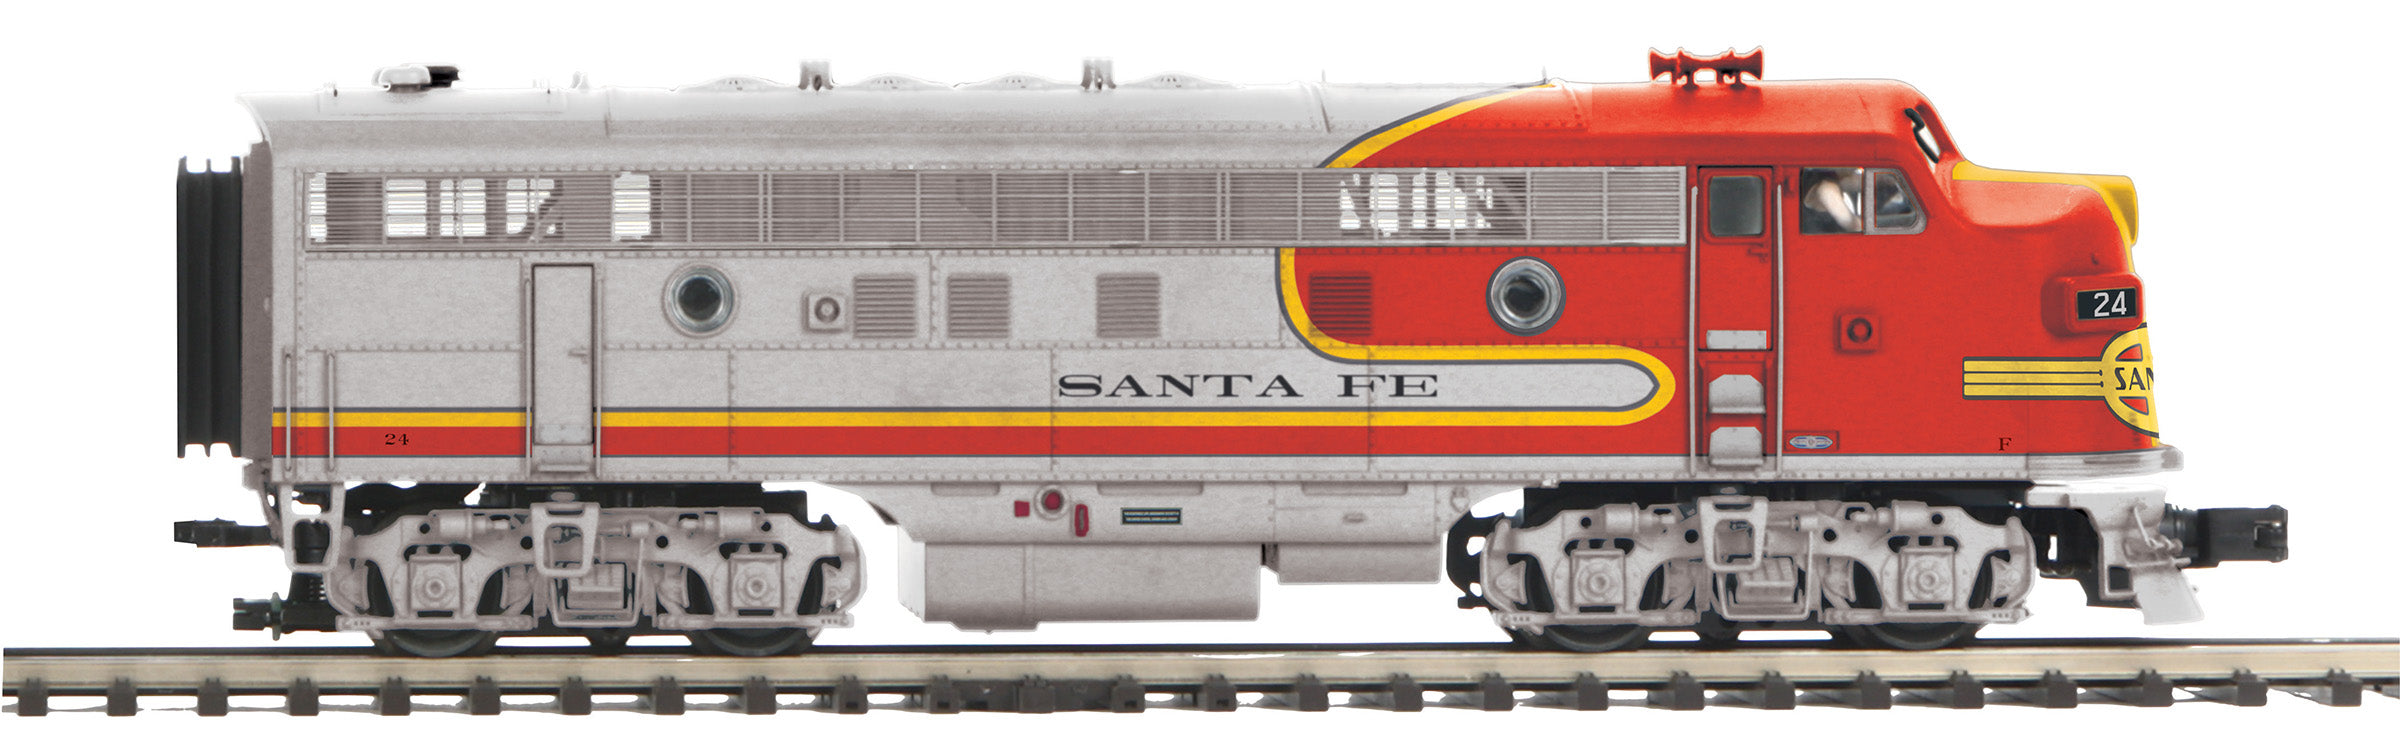 MTH 20-21587-1 - F-3 A Unit Diesel Engine "Santa Fe" #24 w/ PS3 (Hi-Rail Wheels)